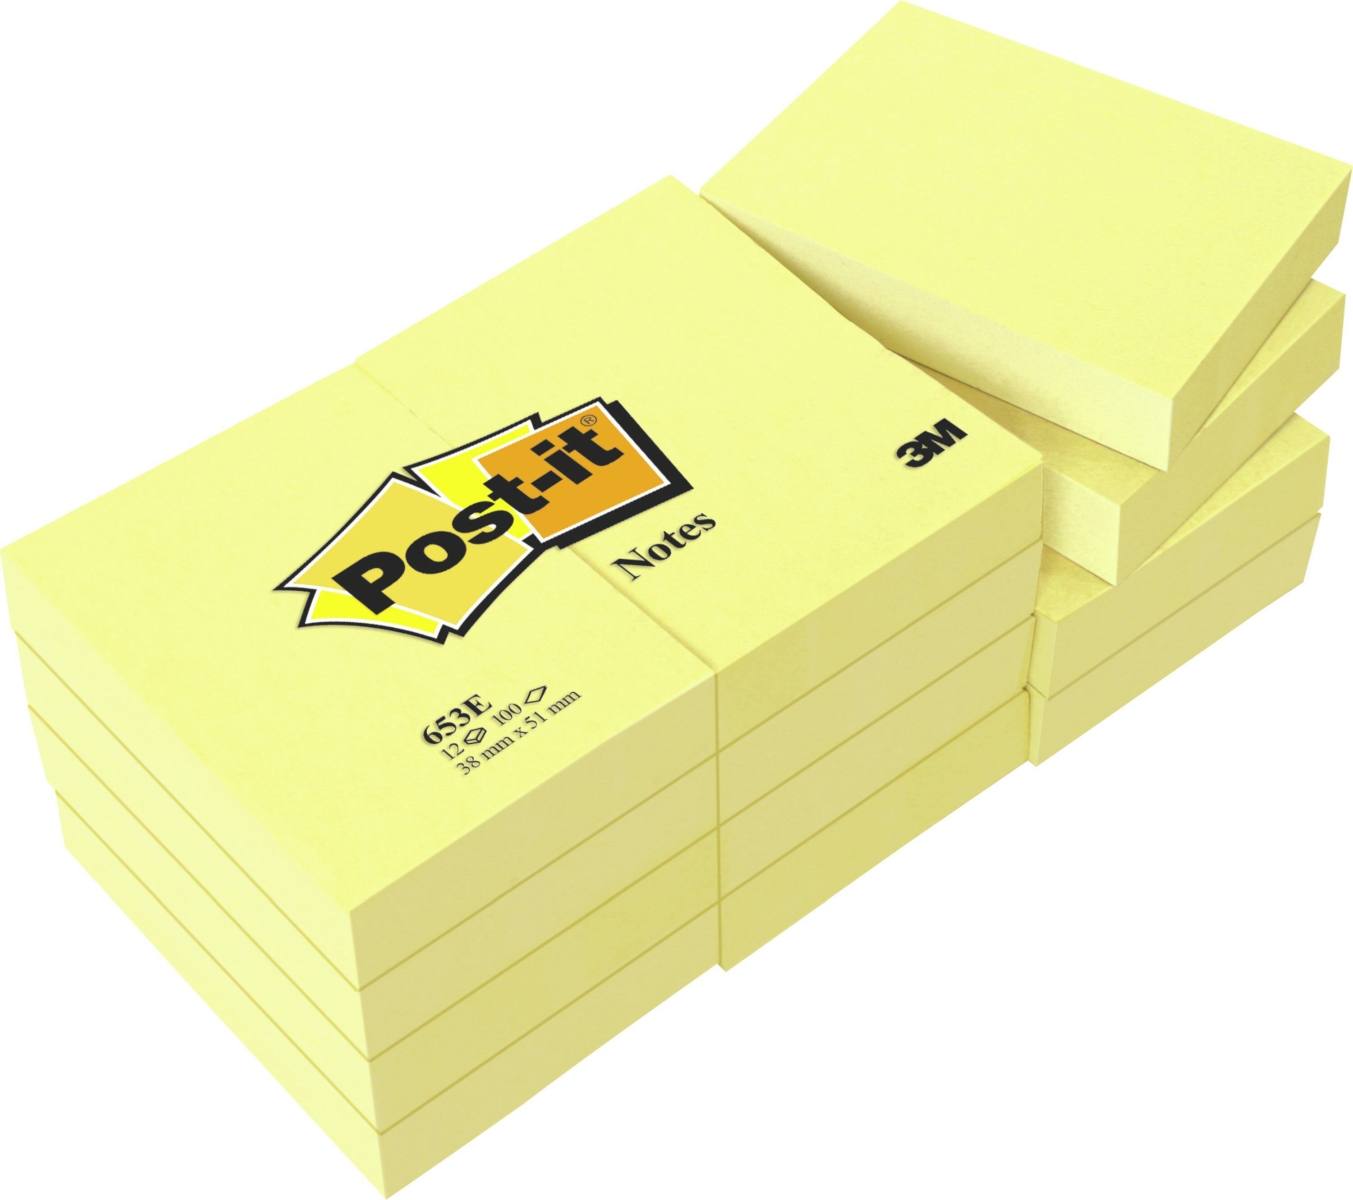 3M Post-it Notes 653E, 51 mm x 38 mm, amarillo, 12 blocs de 100 hojas cada uno